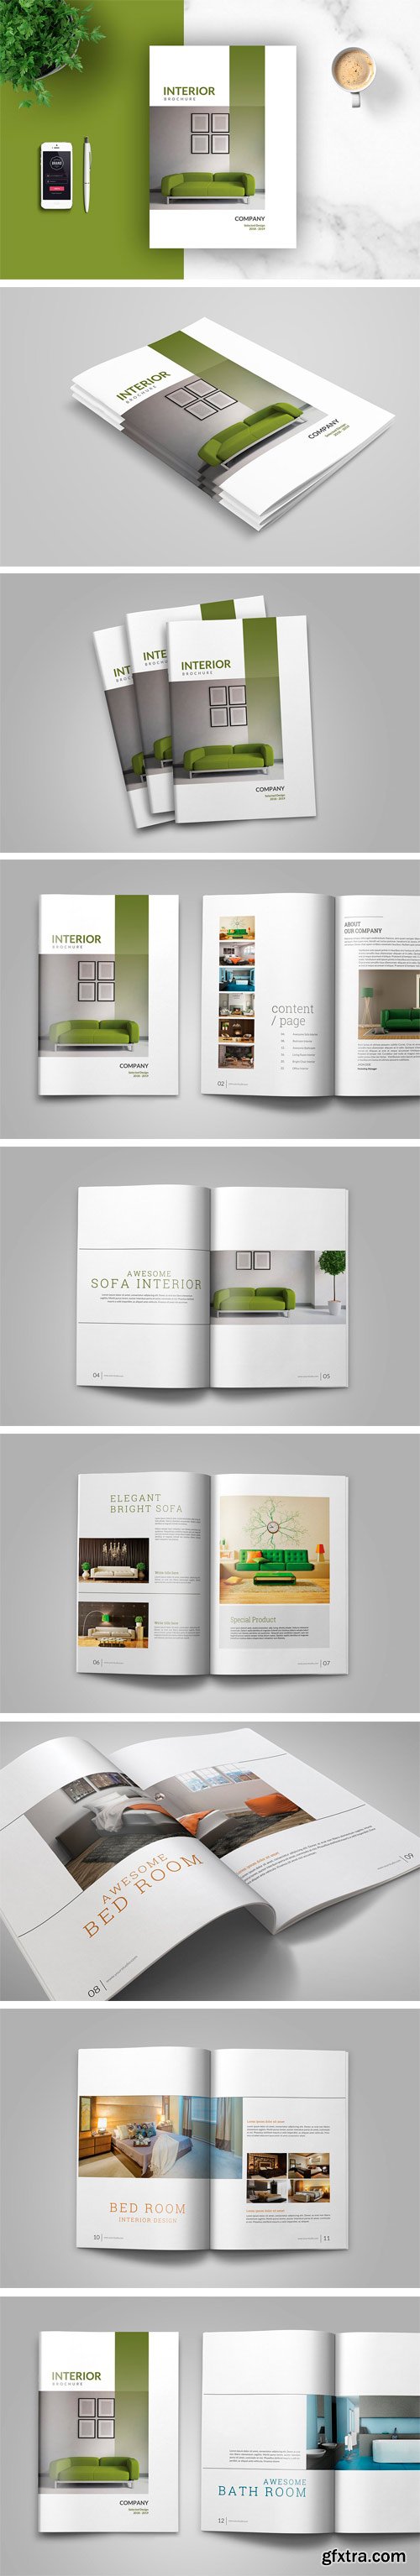 CM 1458930 - PSD - Interior Brochures / Catalogs